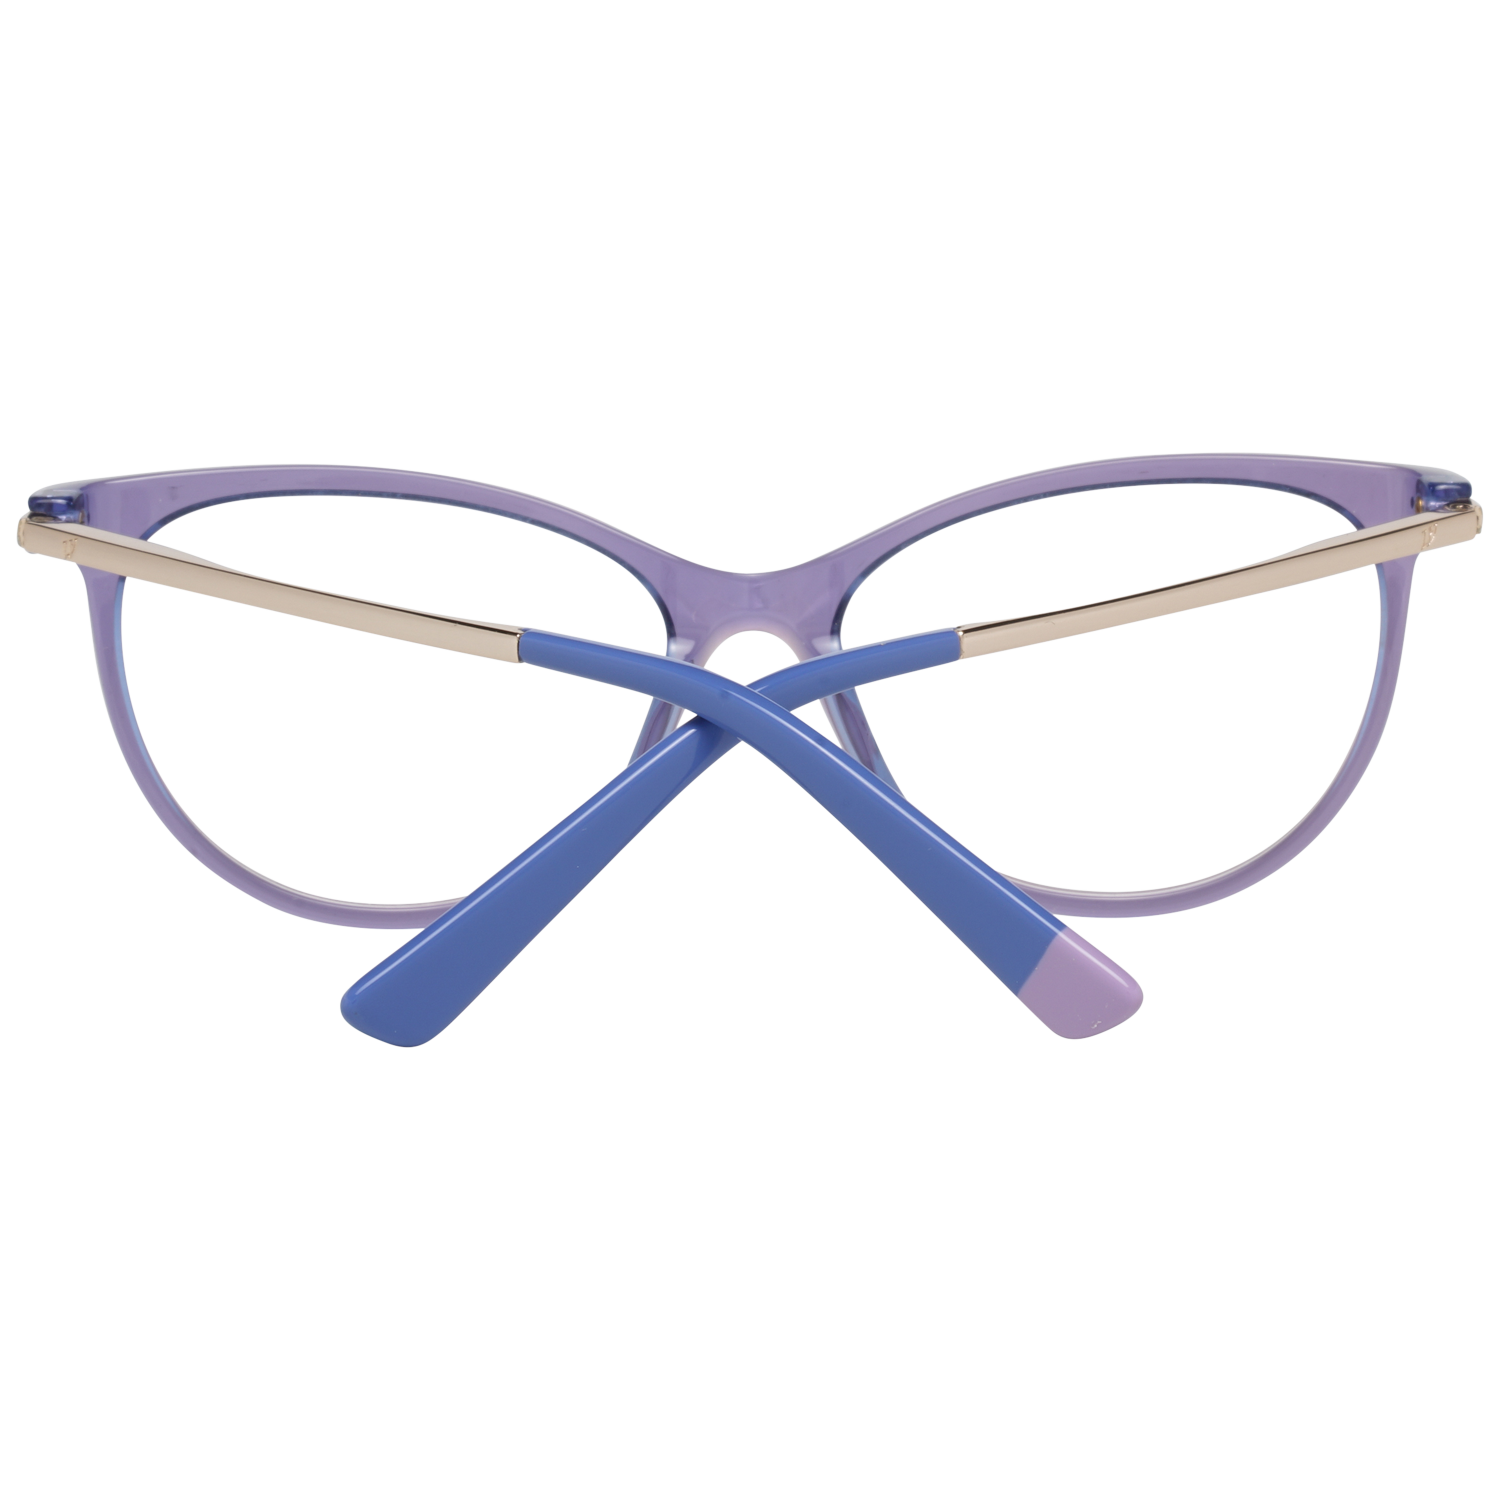 Web Frames Web Optical Frame WE5239 080 54 Eyeglasses Eyewear UK USA Australia 